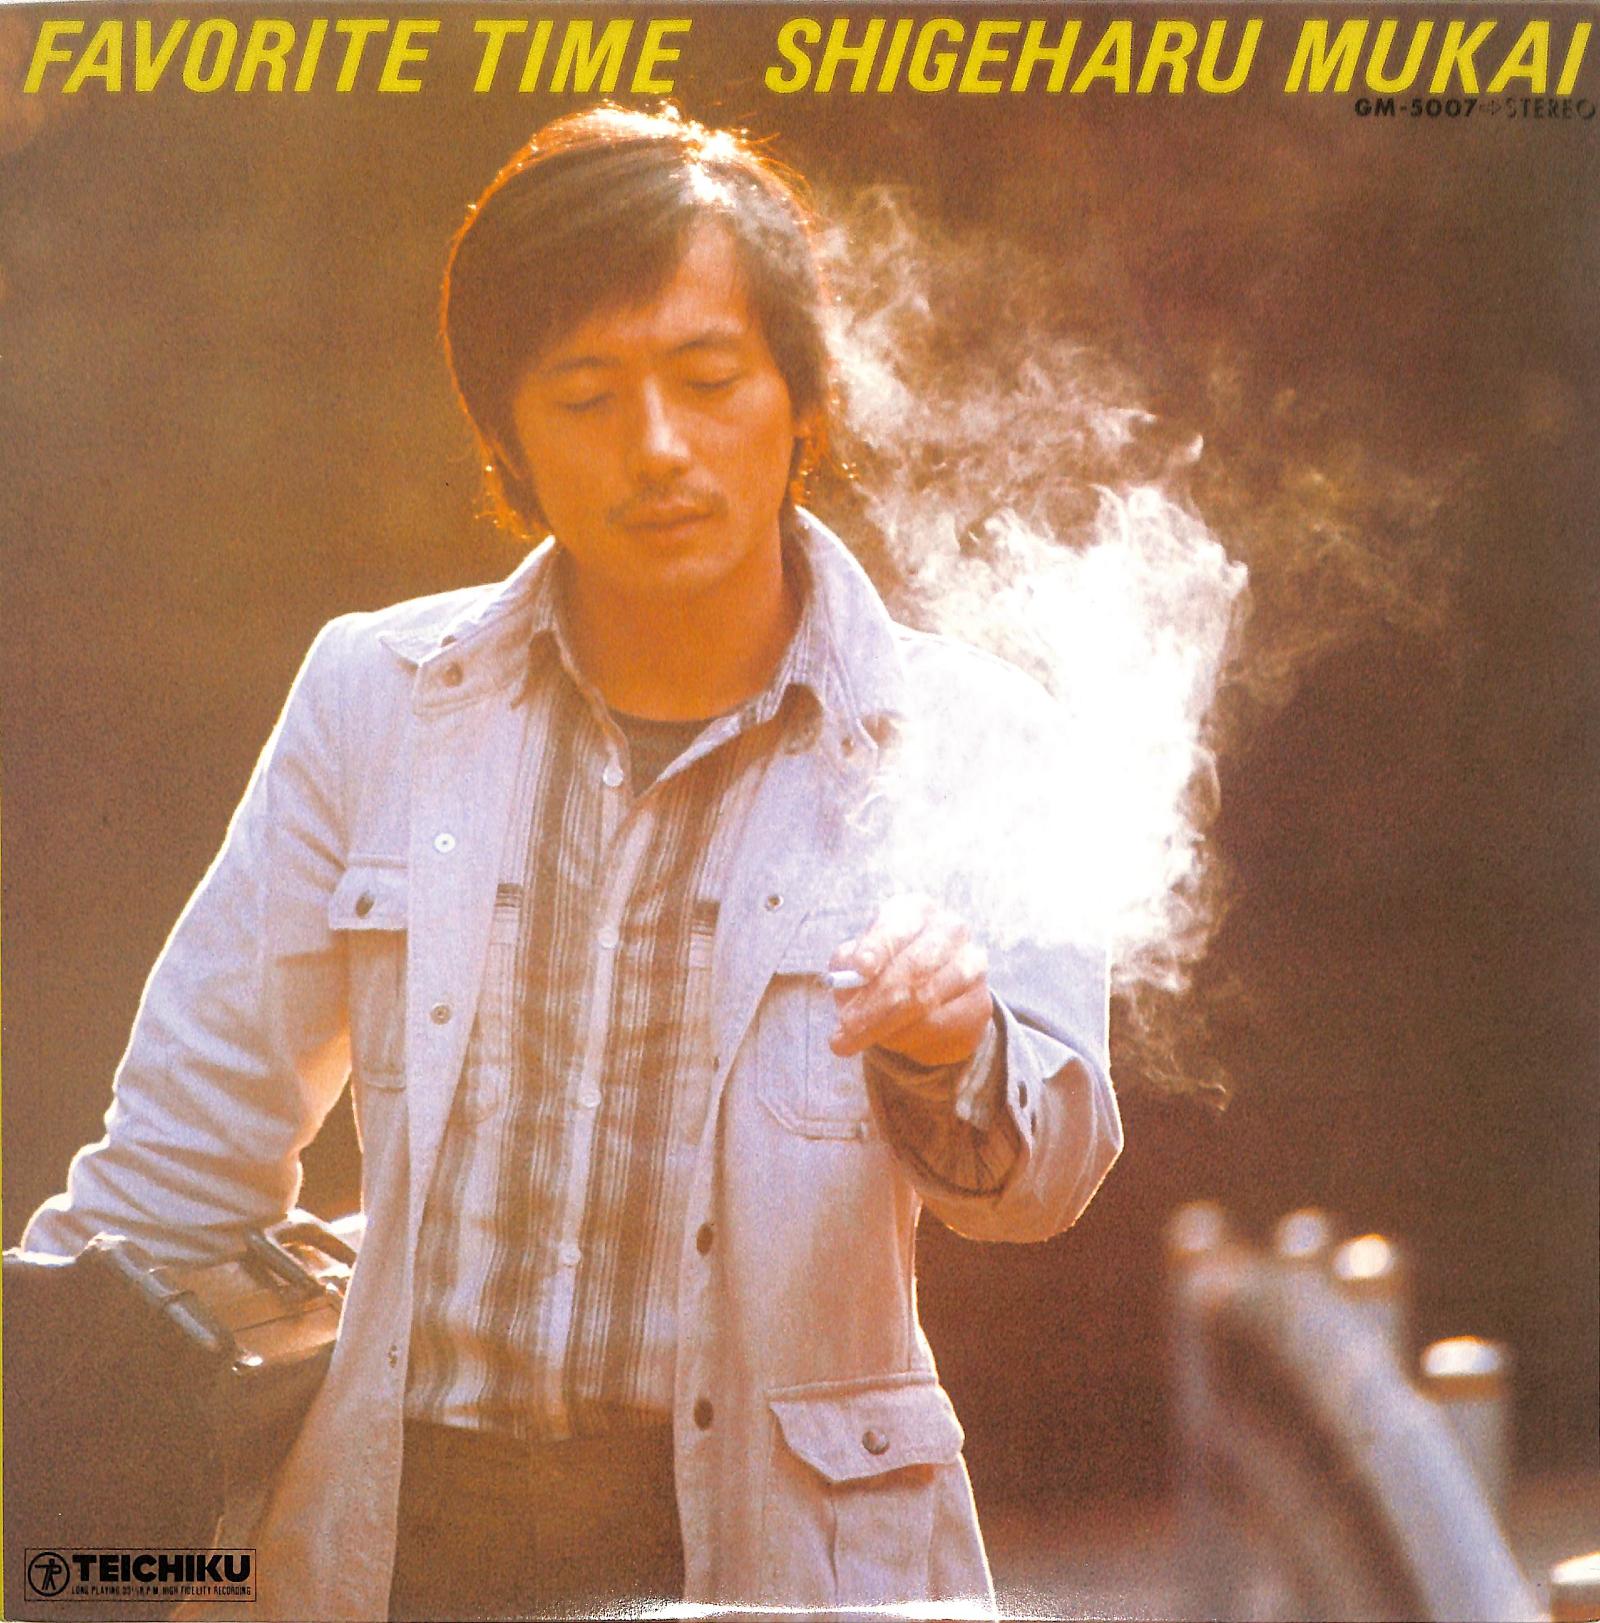 SHIGEHARU MUKAI - Favorite Time